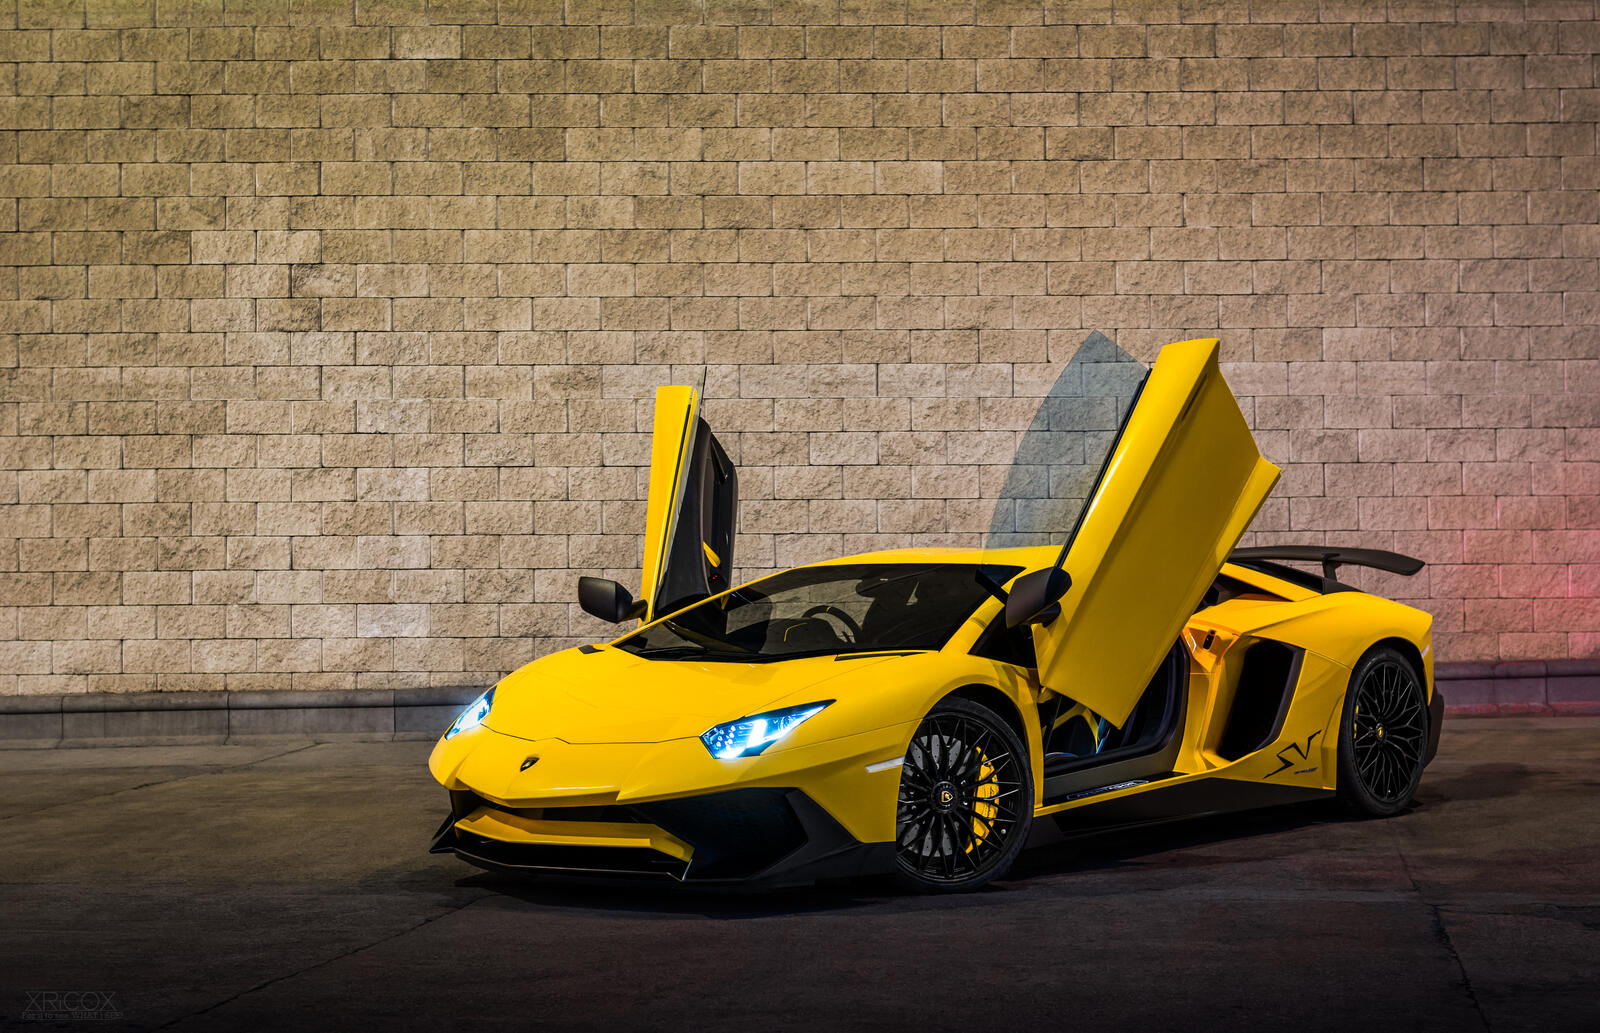 免费照片一张打开车门的黄色兰博基尼 Aventador 的照片。